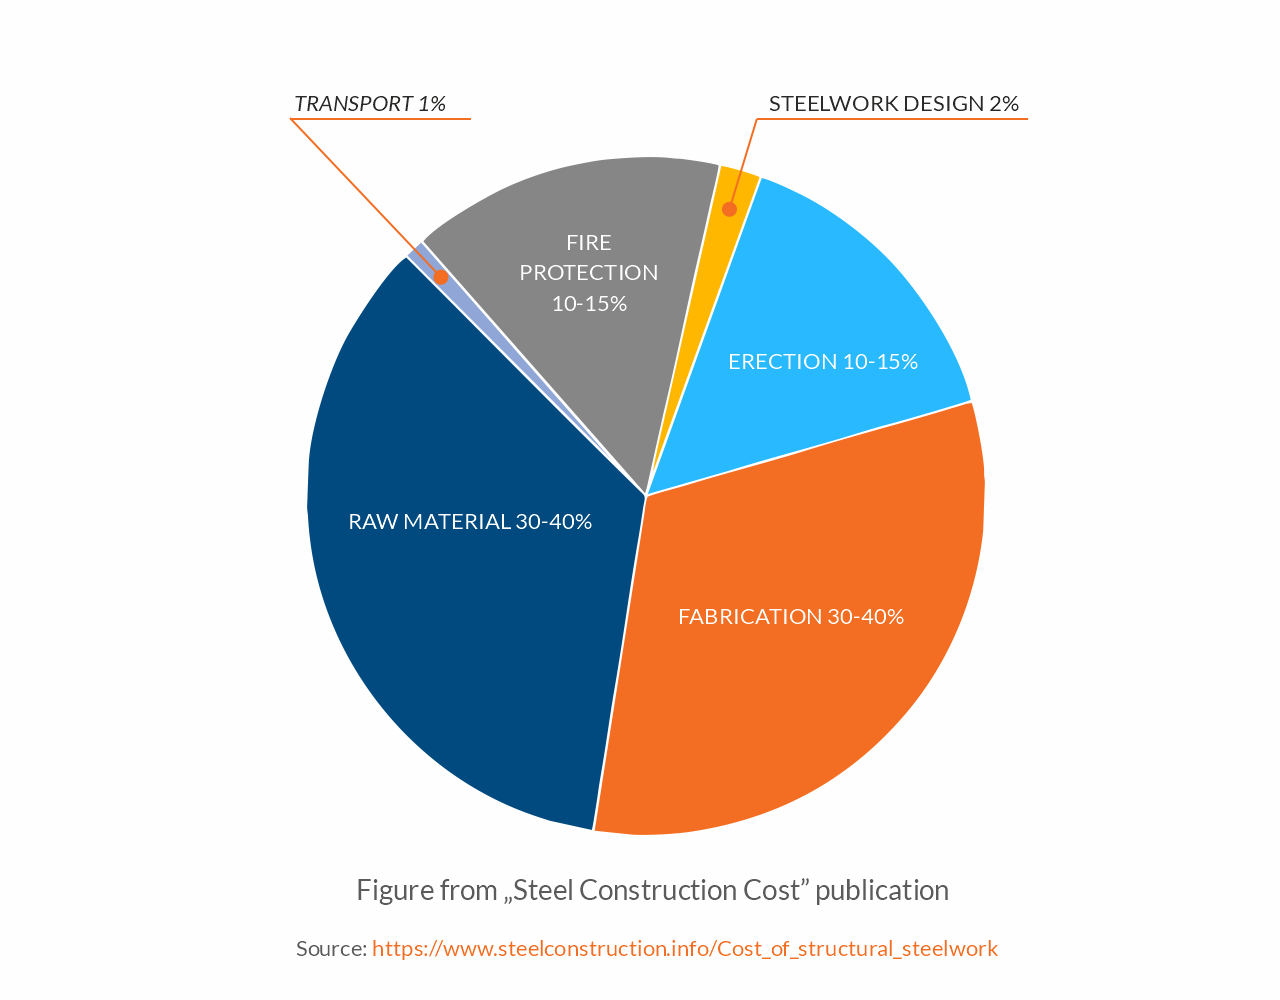 Figure de la publication Steel Construction Cost